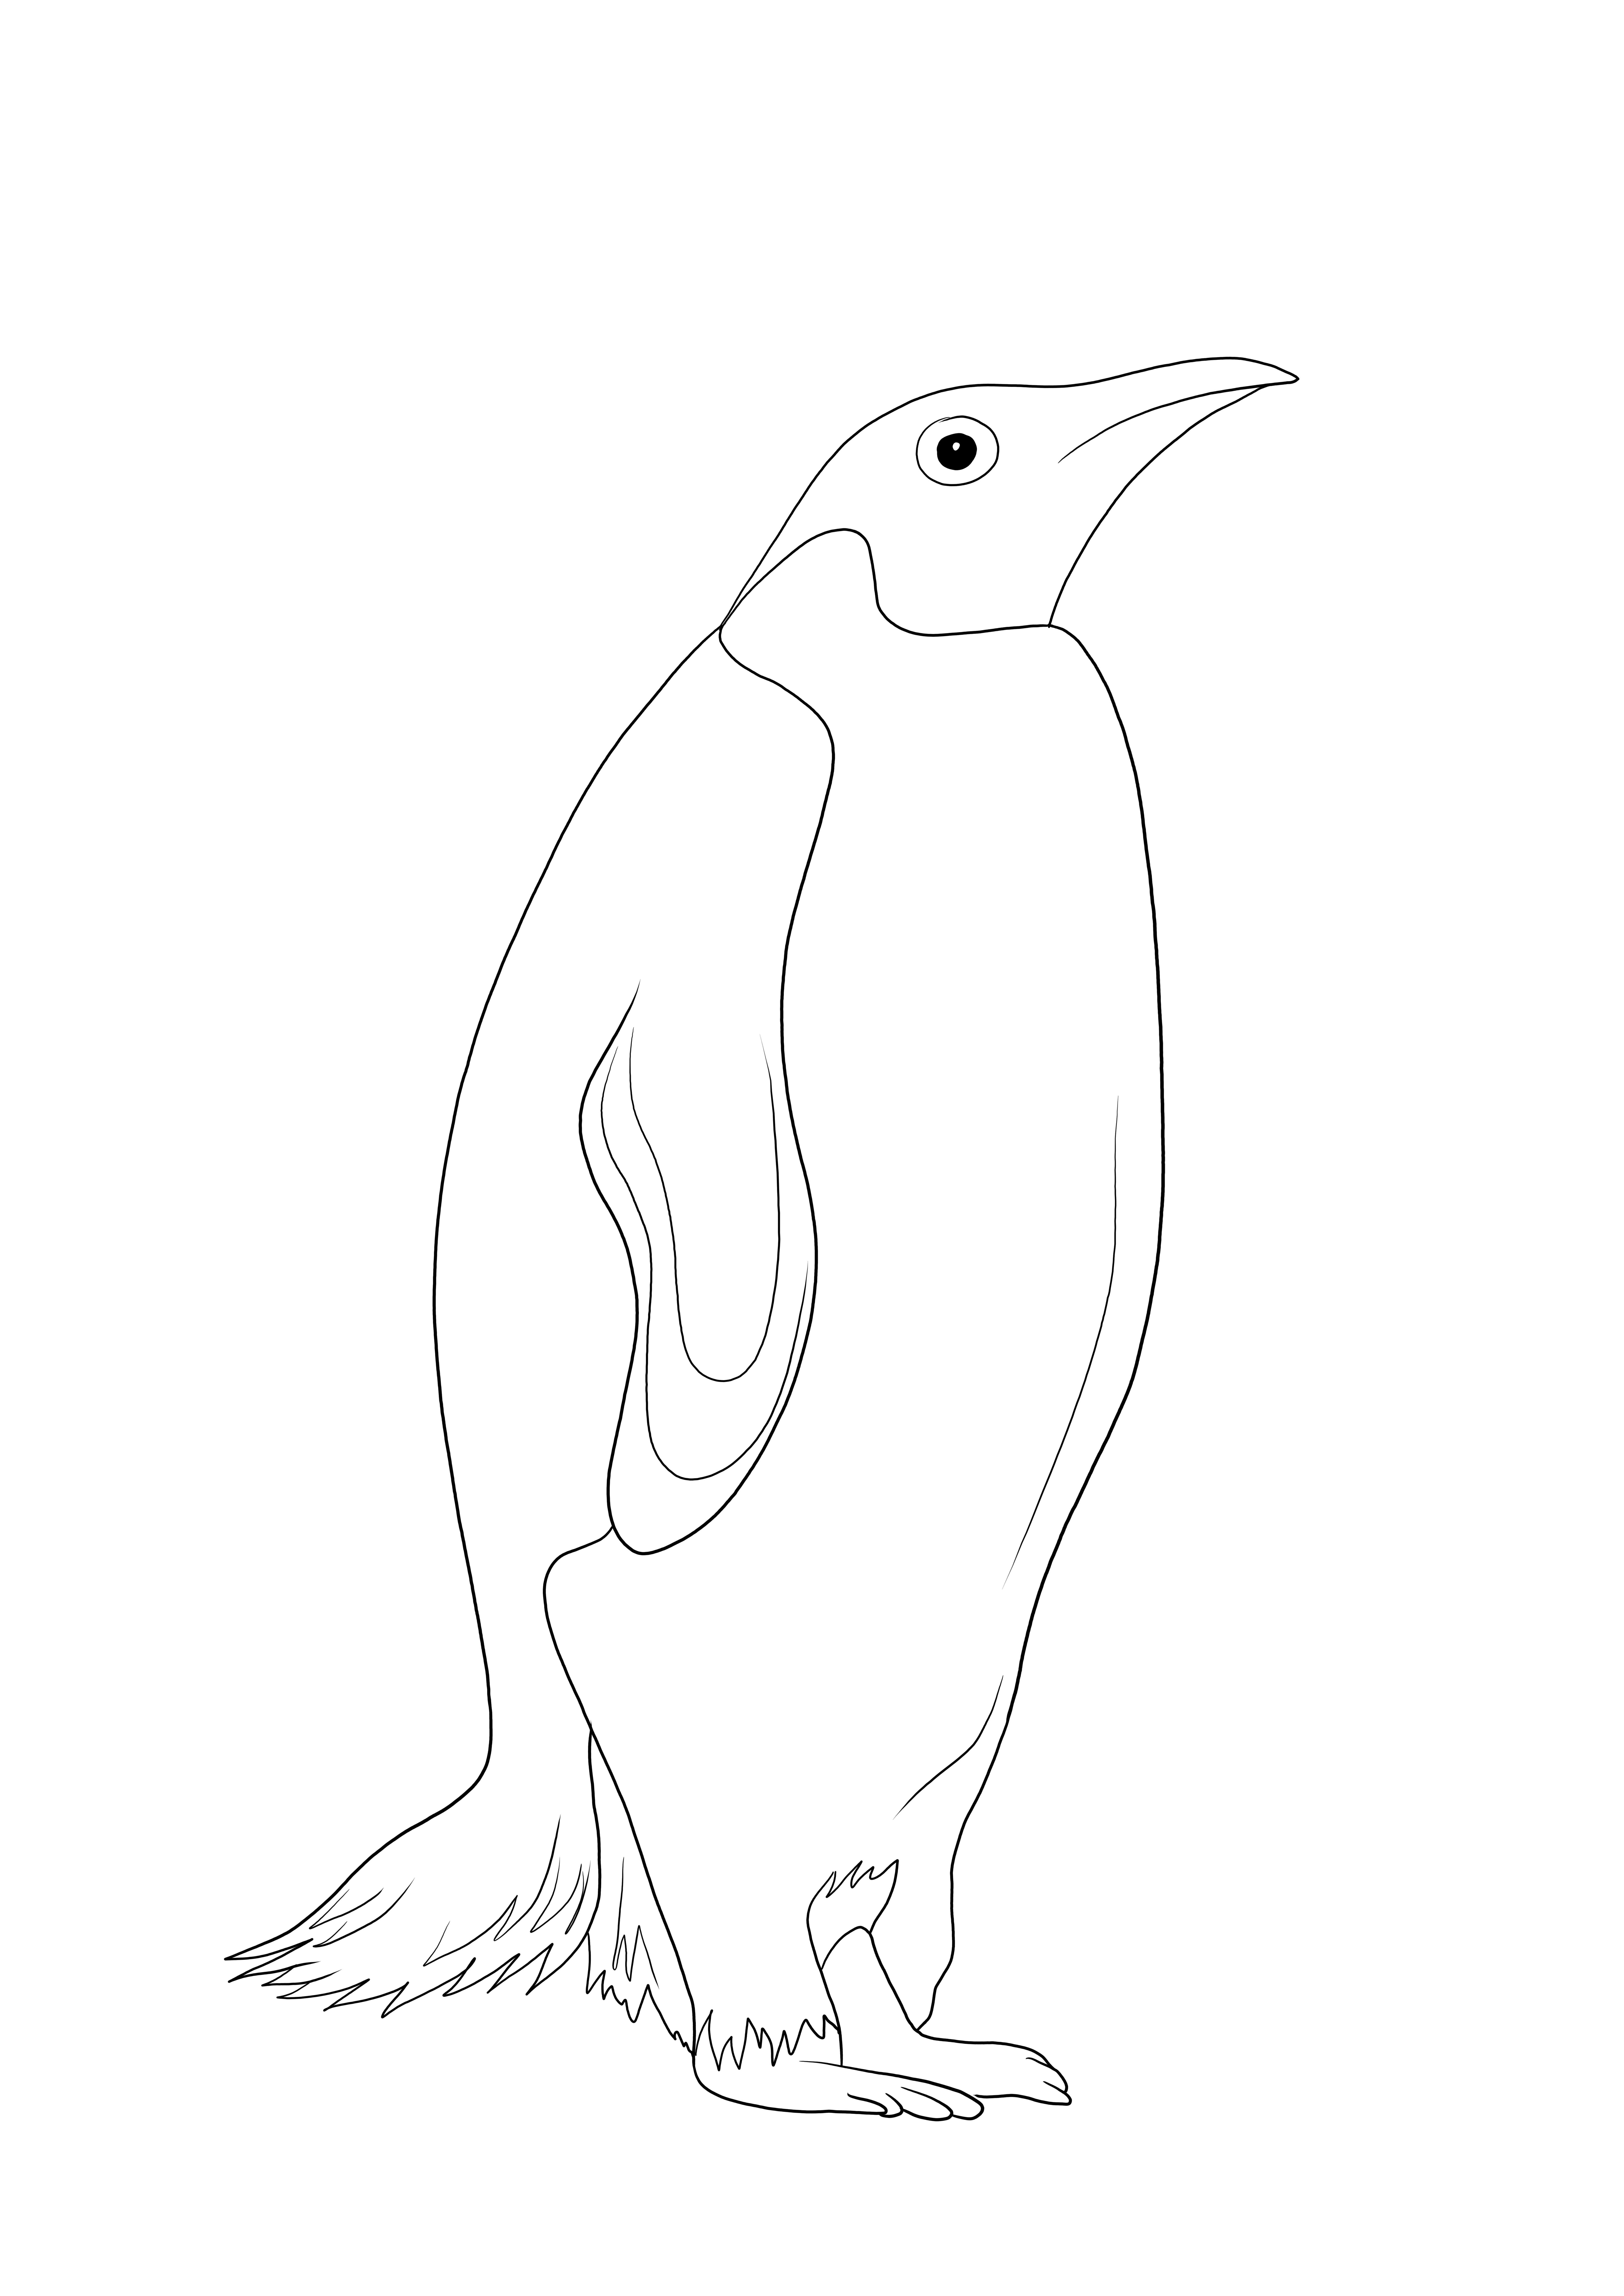 Bir penguenin akıllı ve ücretsiz boyama sayfası - deniz hayvanları hakkında bilgi edinmek için harika bir araç